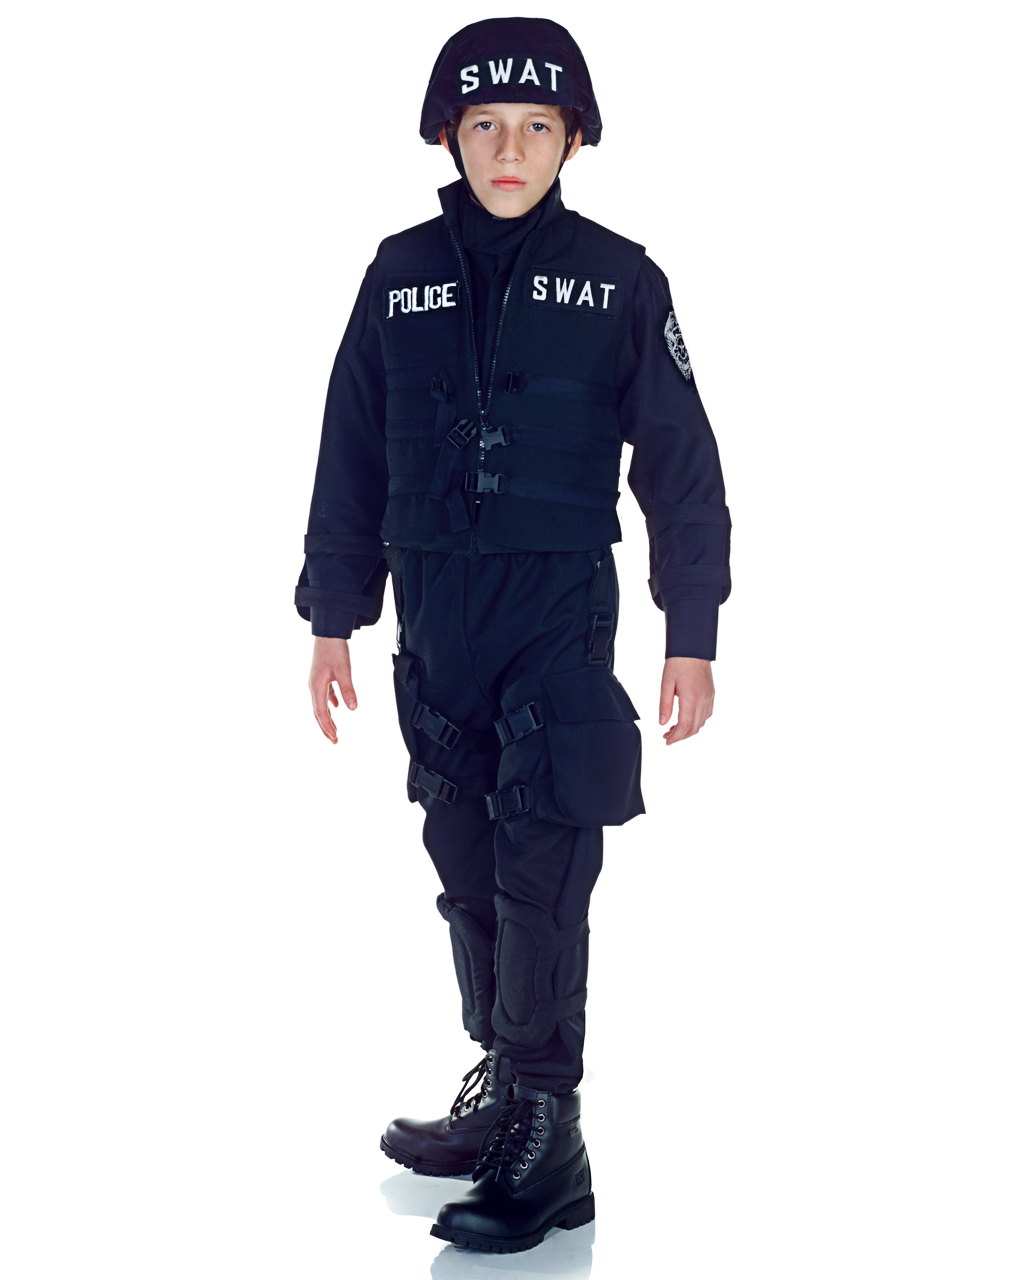 Kinder Faschingskostüm Polizist mit Swat-Weste & Ausrüstung in schwarz